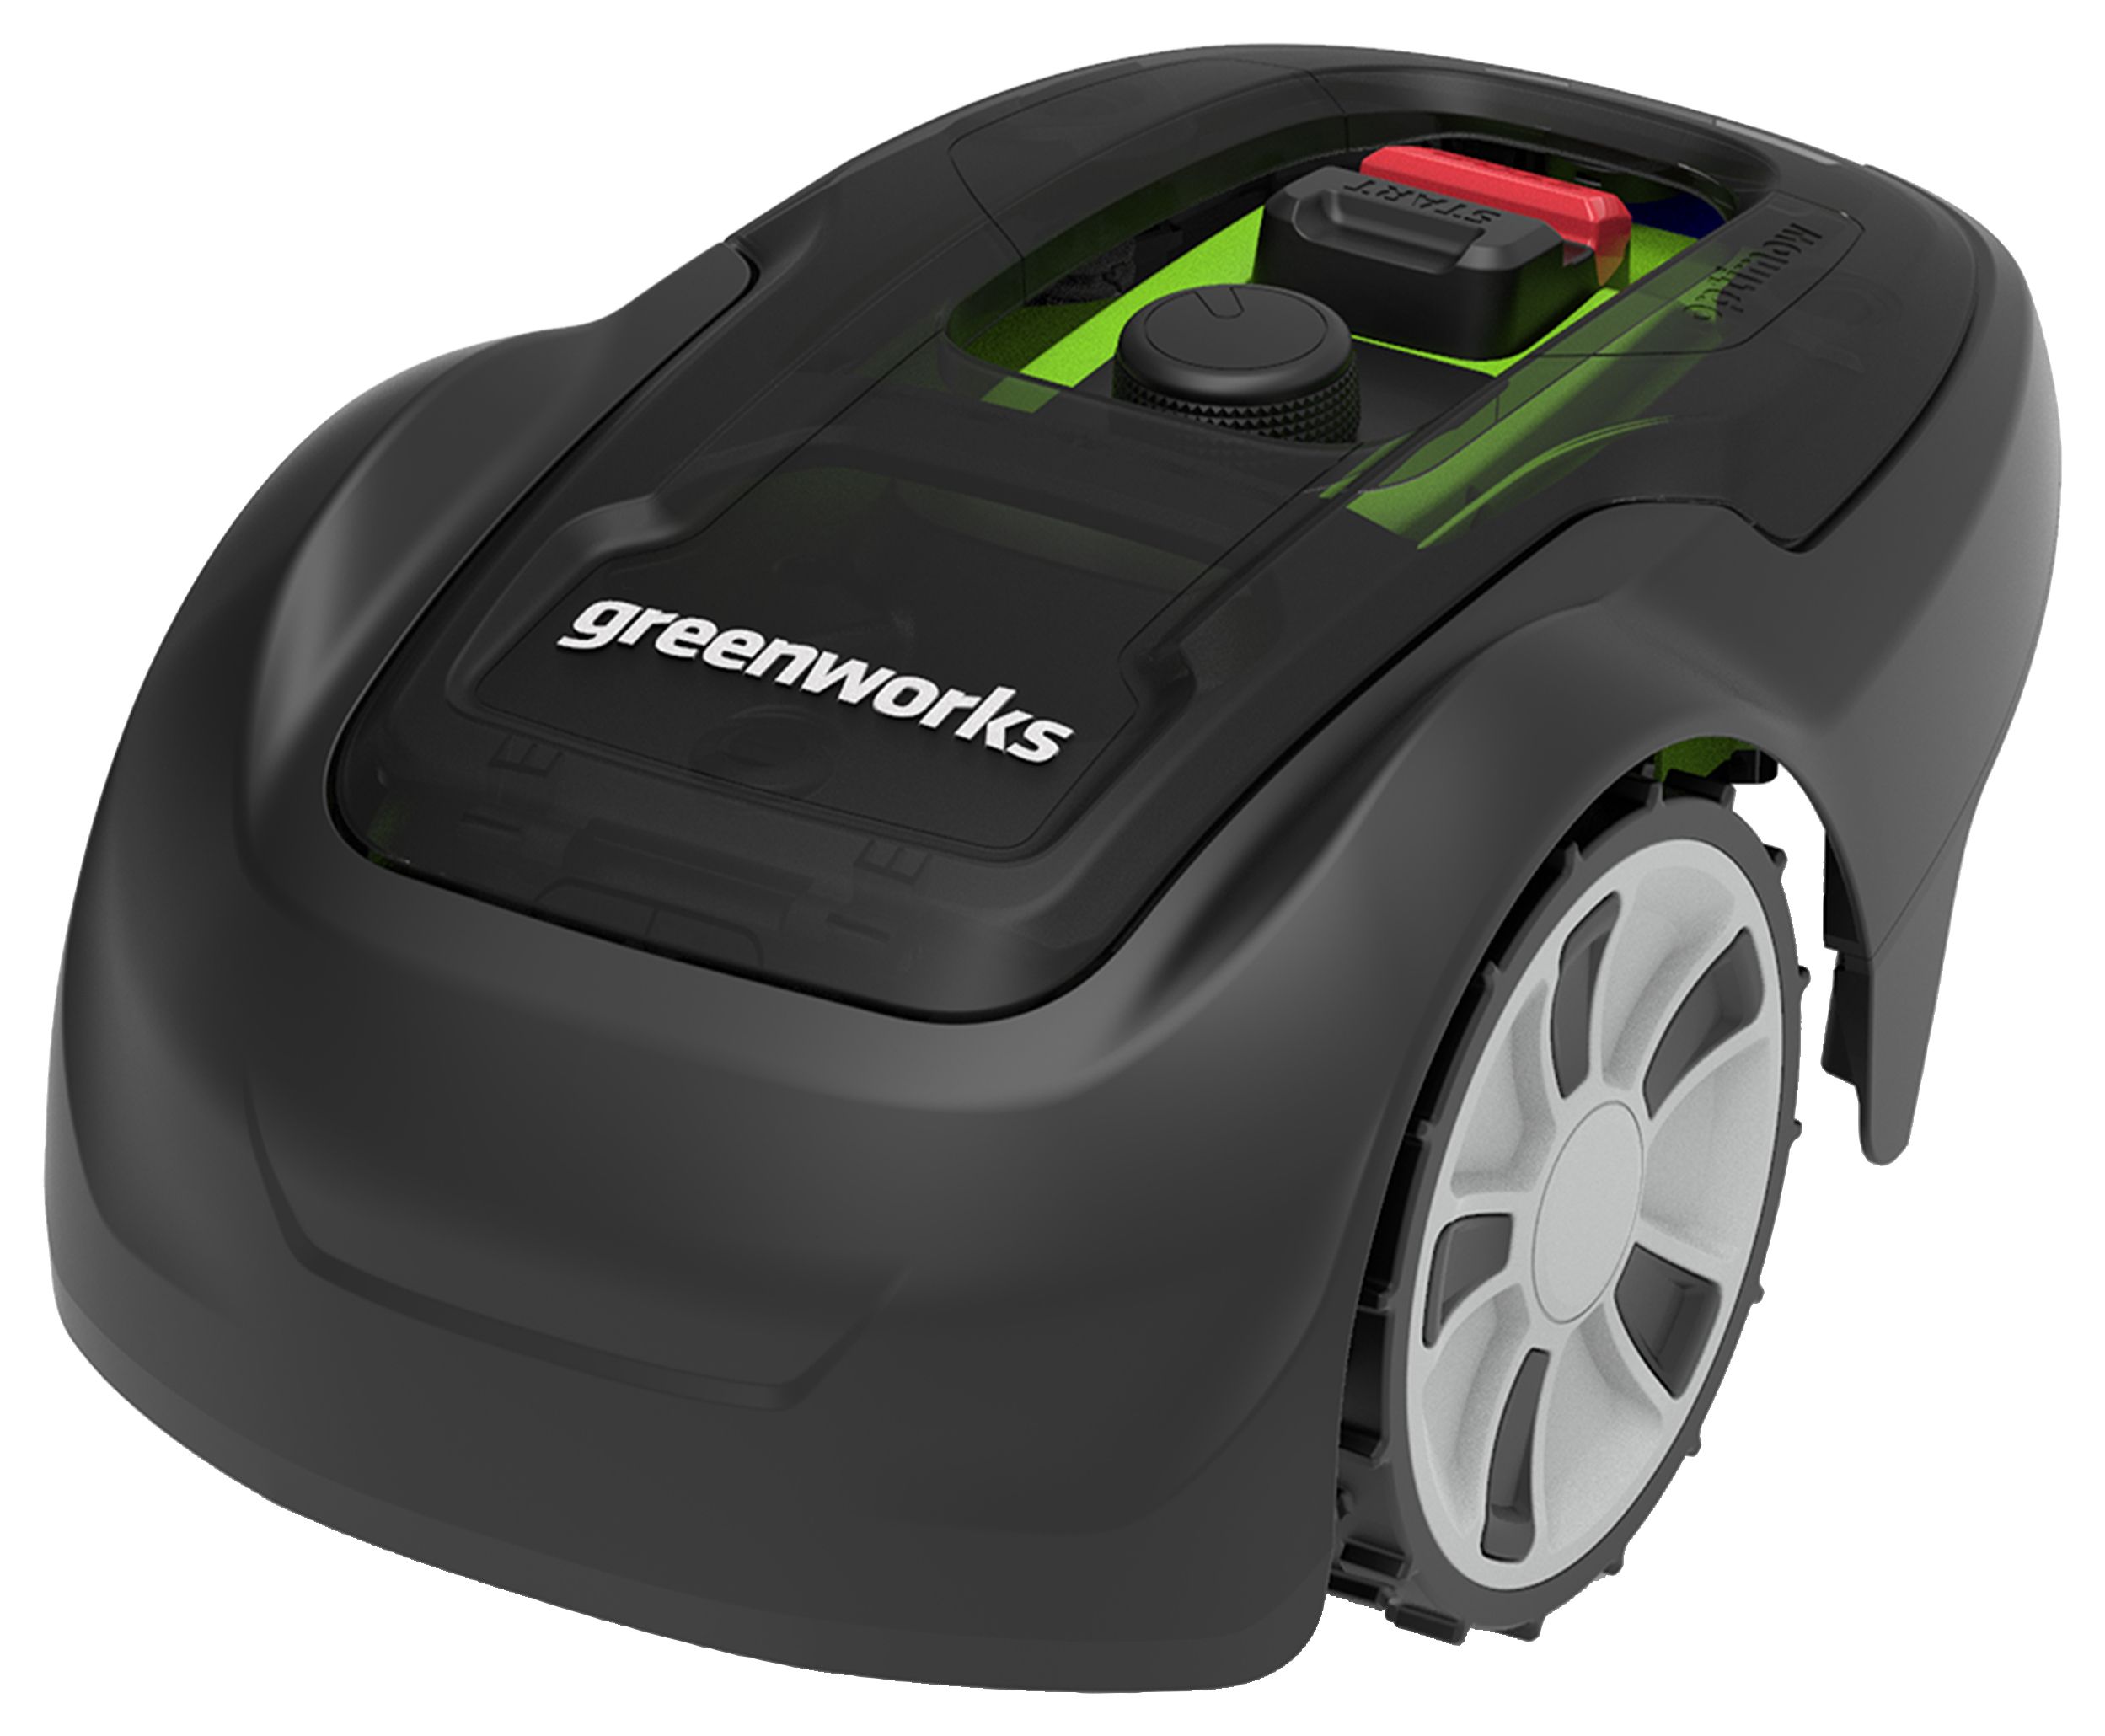 Greenworks Robotic Lightweight Lawn Mower - 550m